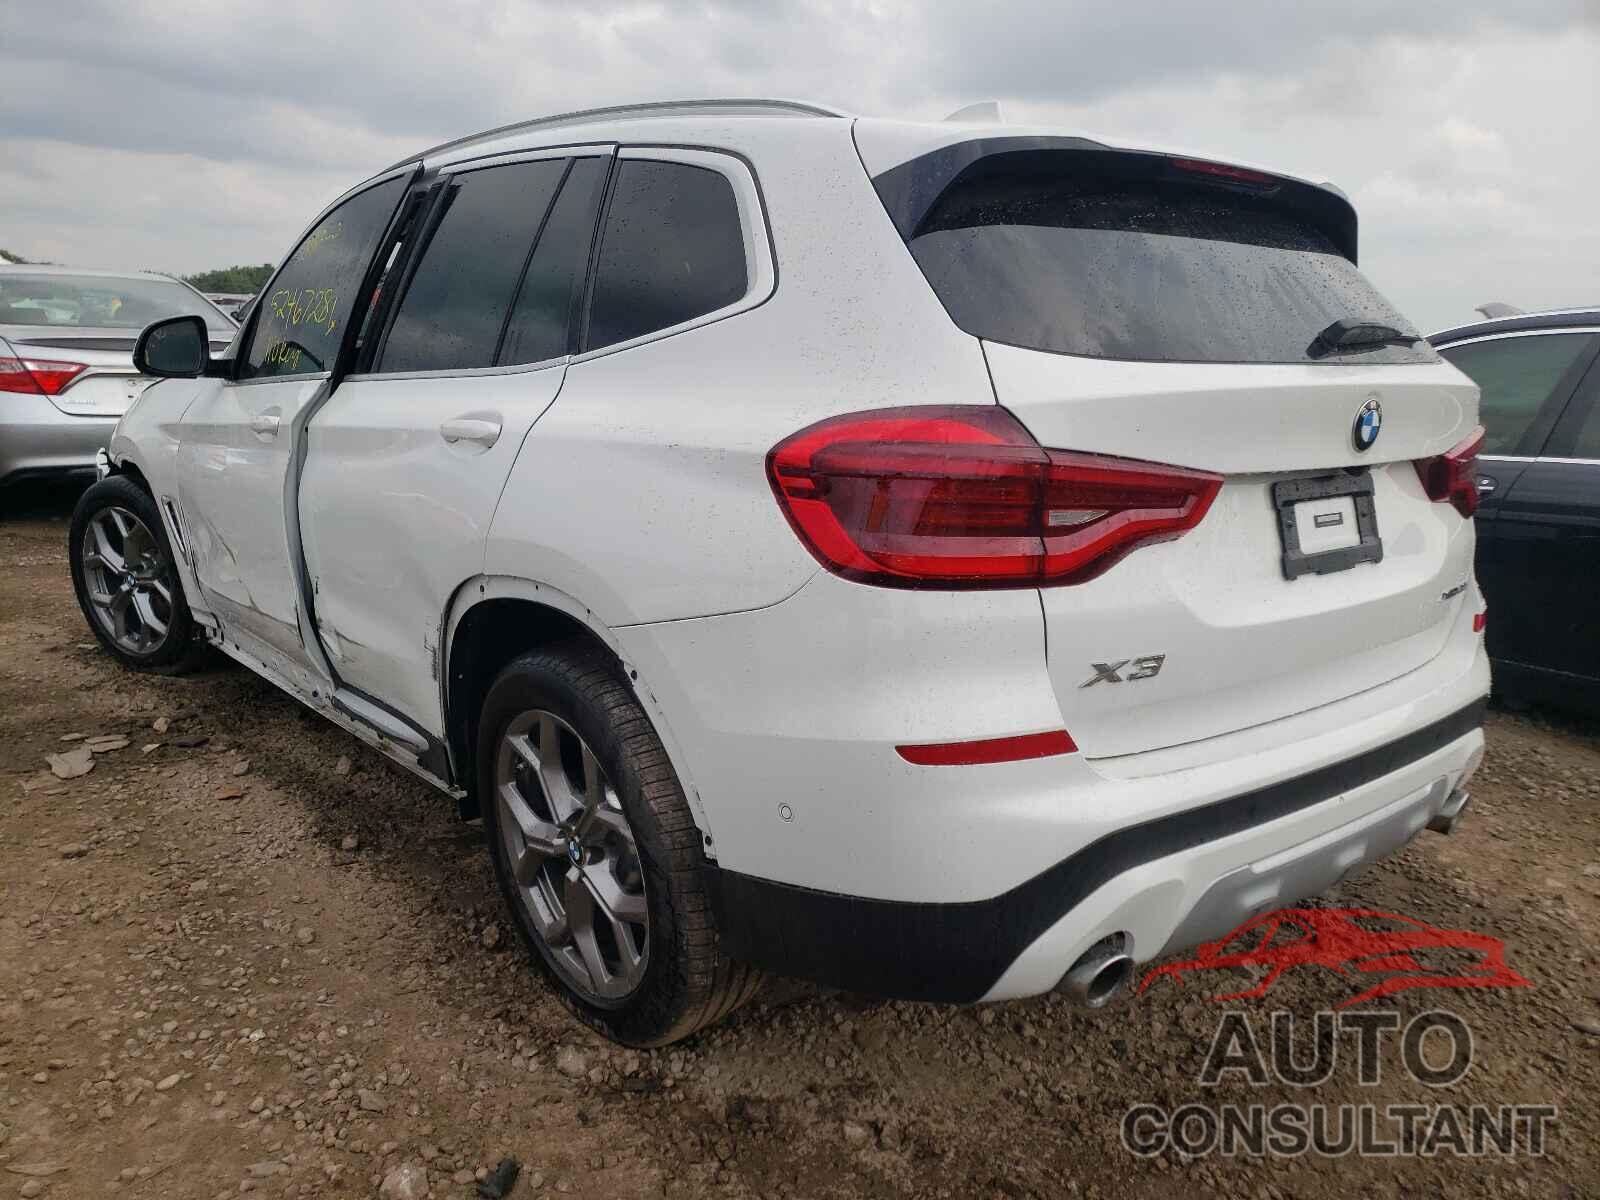 BMW X3 2021 - 5UXTY5C04M9D90599